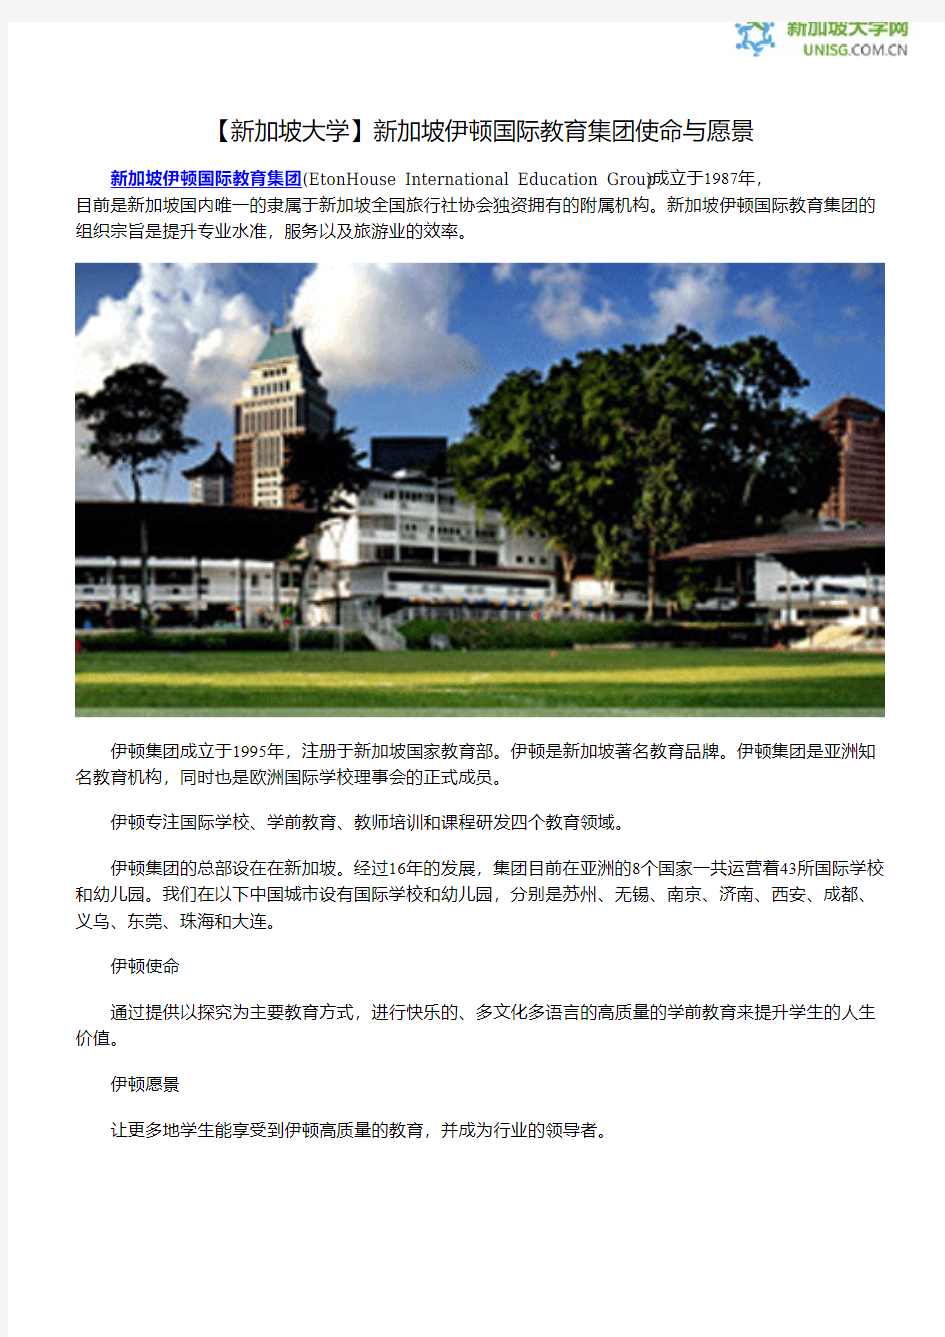 【新加坡大学】新加坡伊顿国际教育集团使命与愿景